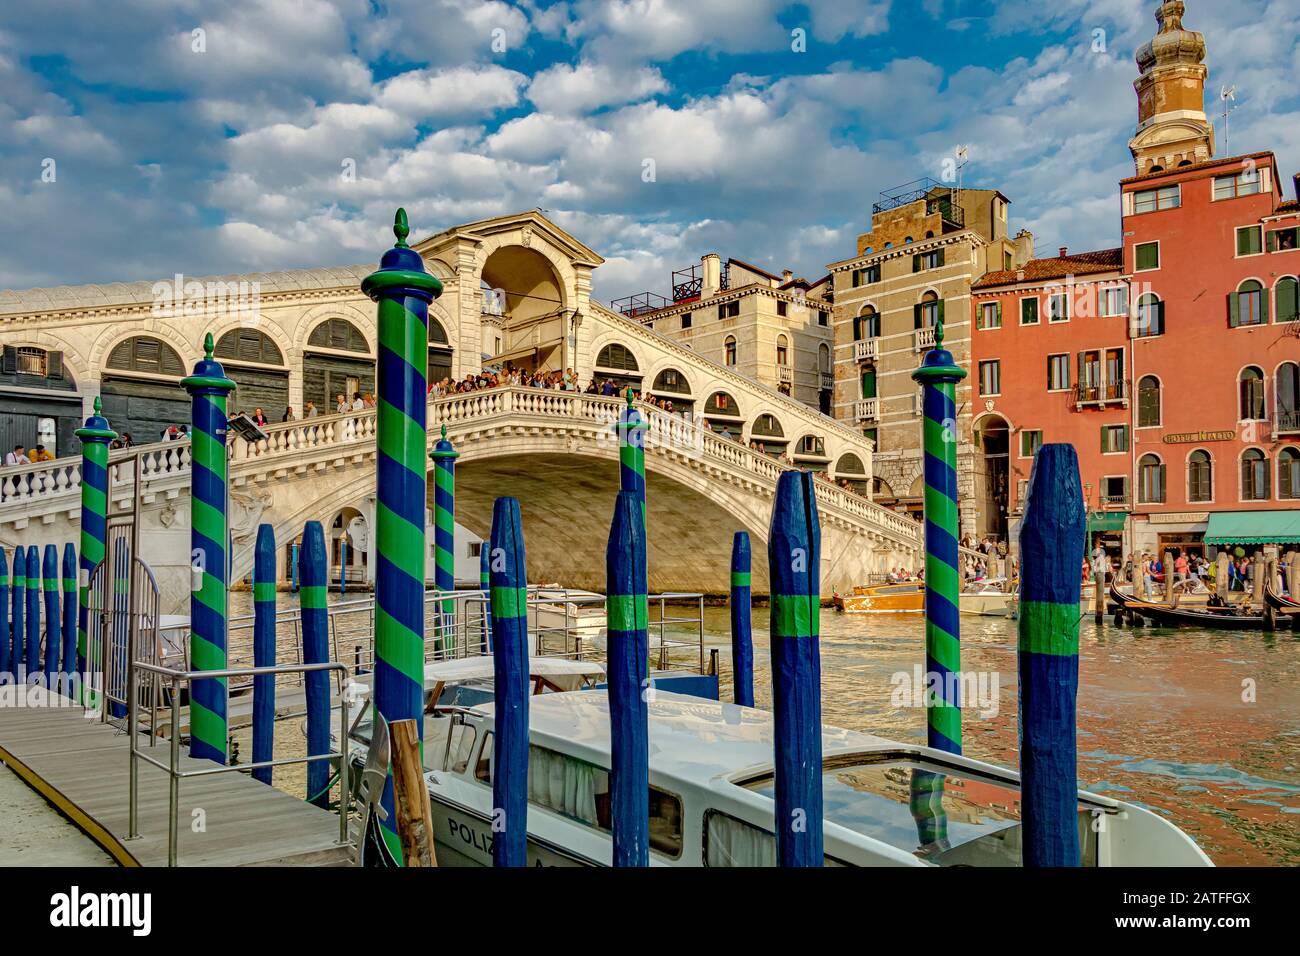 Multitudes en el puente Rialto, el puente más antiguo que cruza el Gran Canal de Venecia en primer plano, postes de madera rayados o Pali da casada Foto de stock